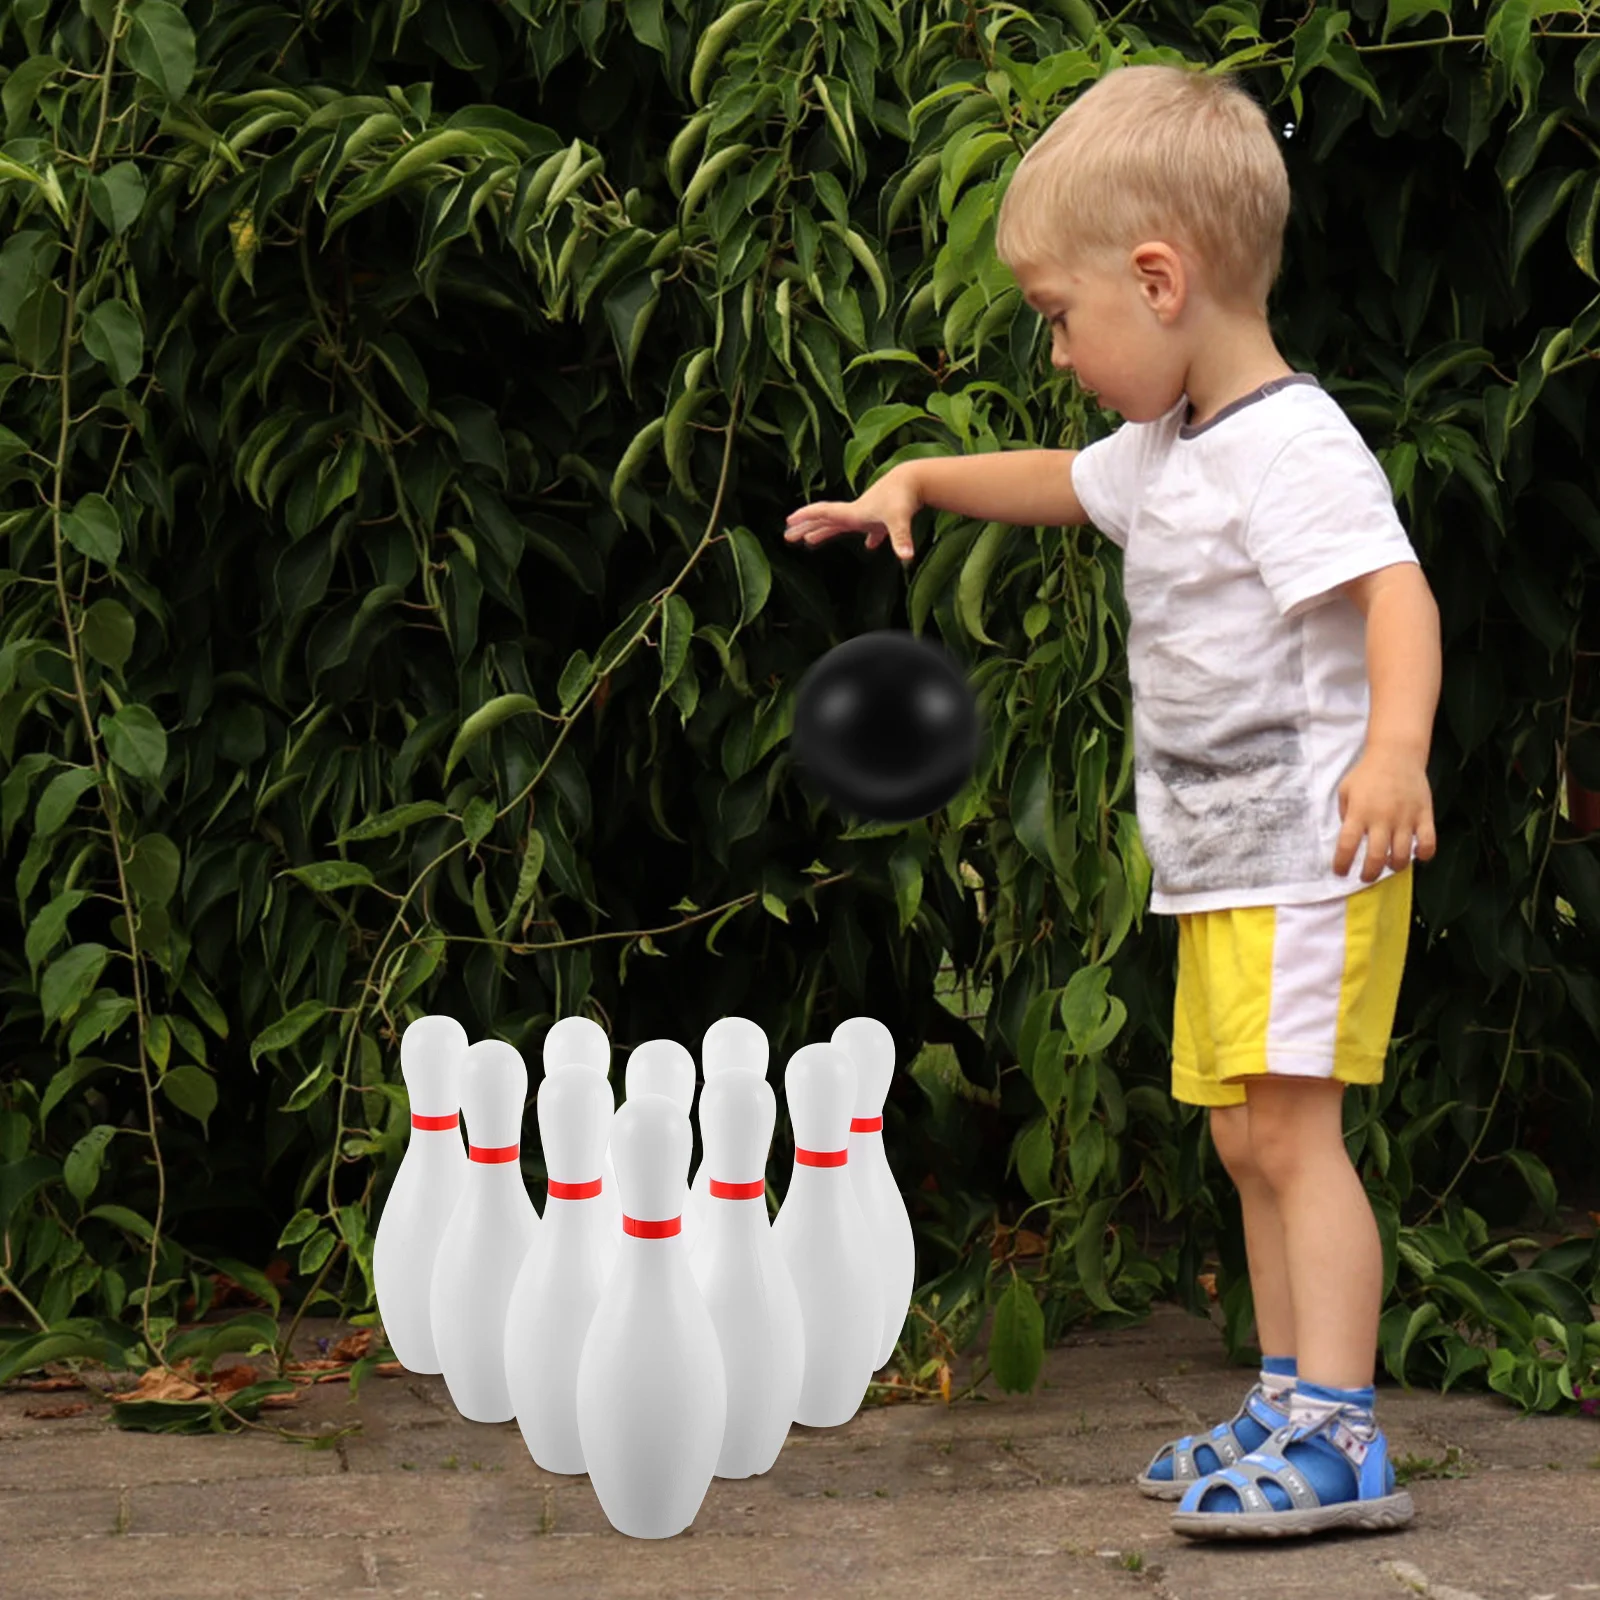 Spielzeug Kunststoff Bowling Spiel Set Spaß Bowling Spiele Eltern Kinder interaktives Spielzeug für die Heims chule (weiß)